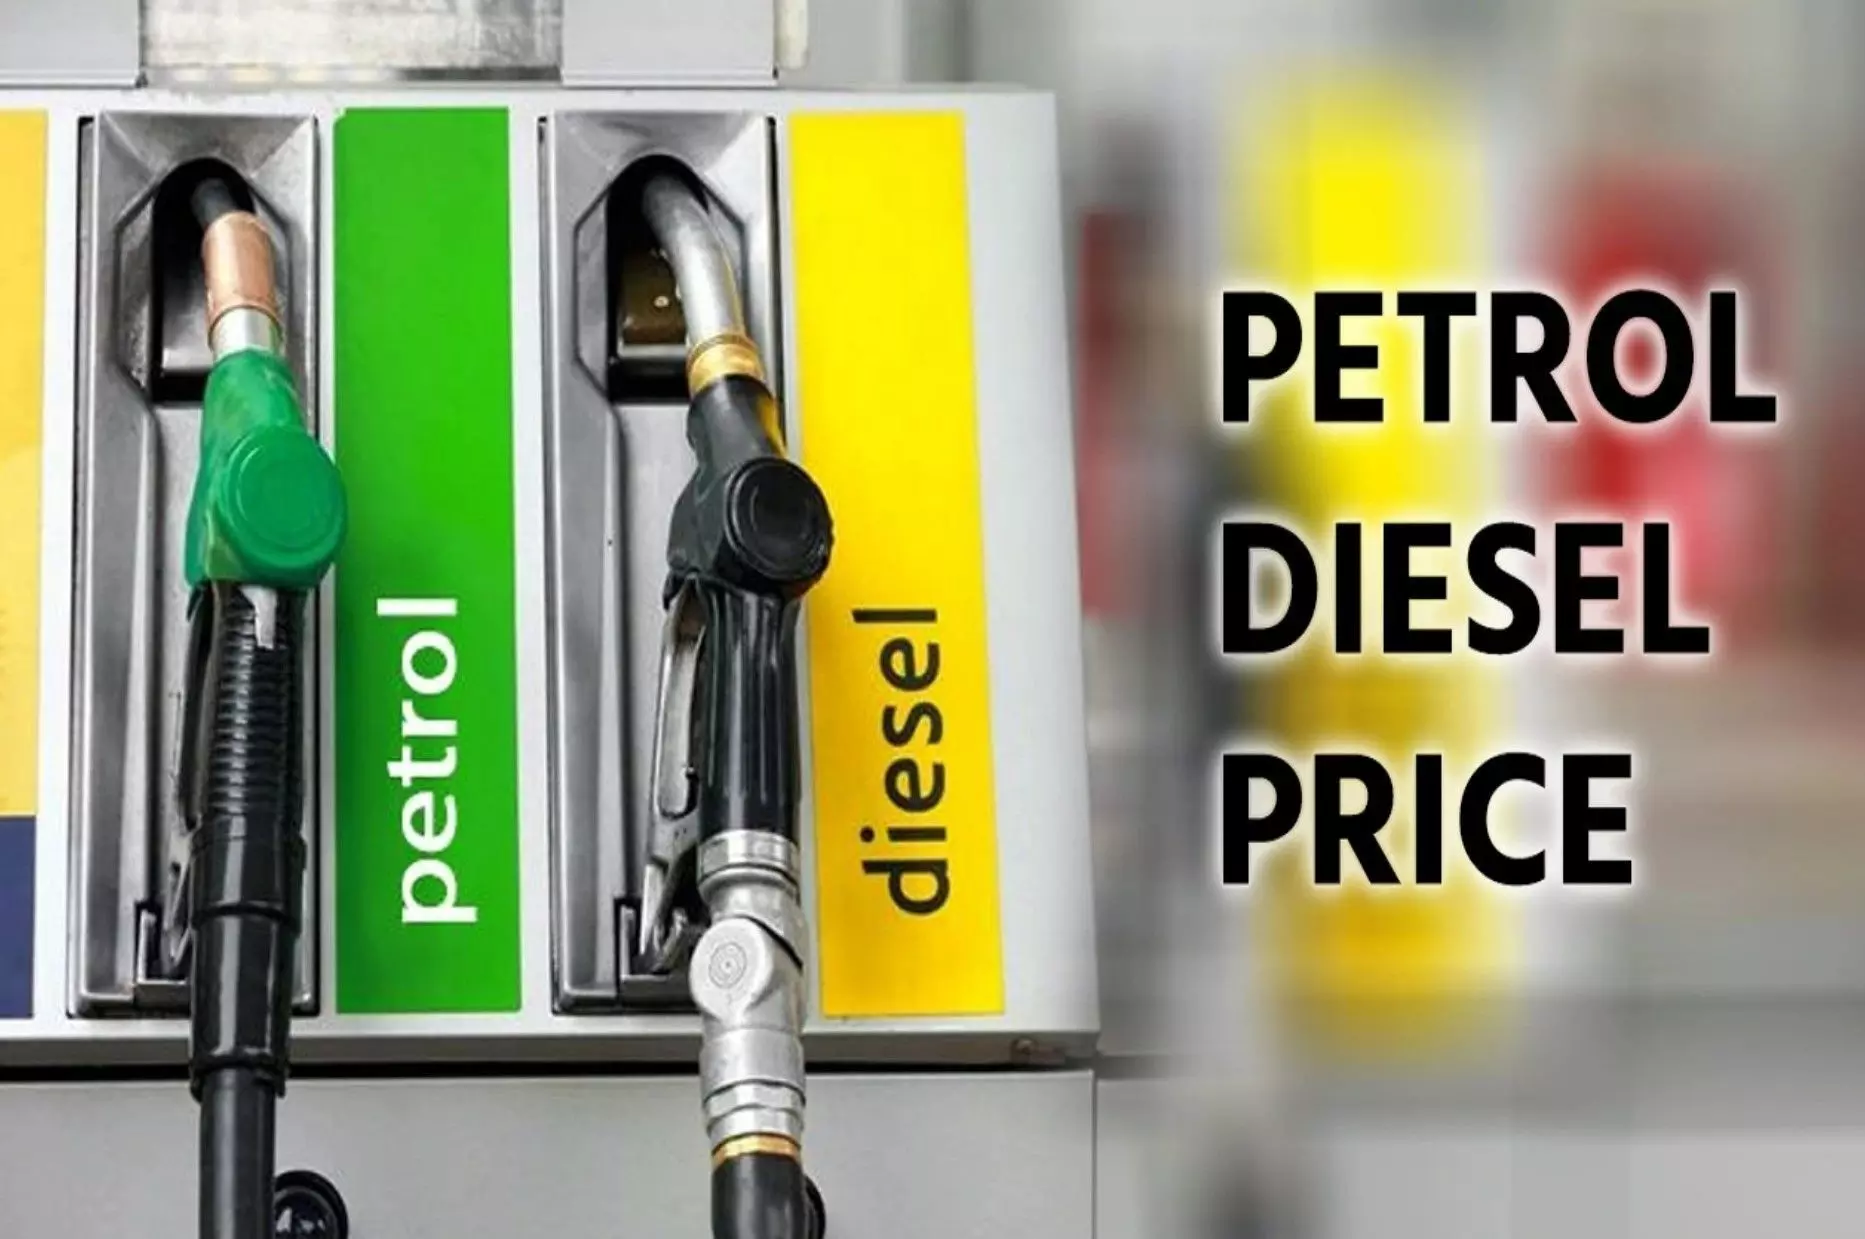 Petrol Diesel Price today : पेट्रोल-डीजल के नए रेट जारी, जानें- आज सस्ता हुआ या महंगा